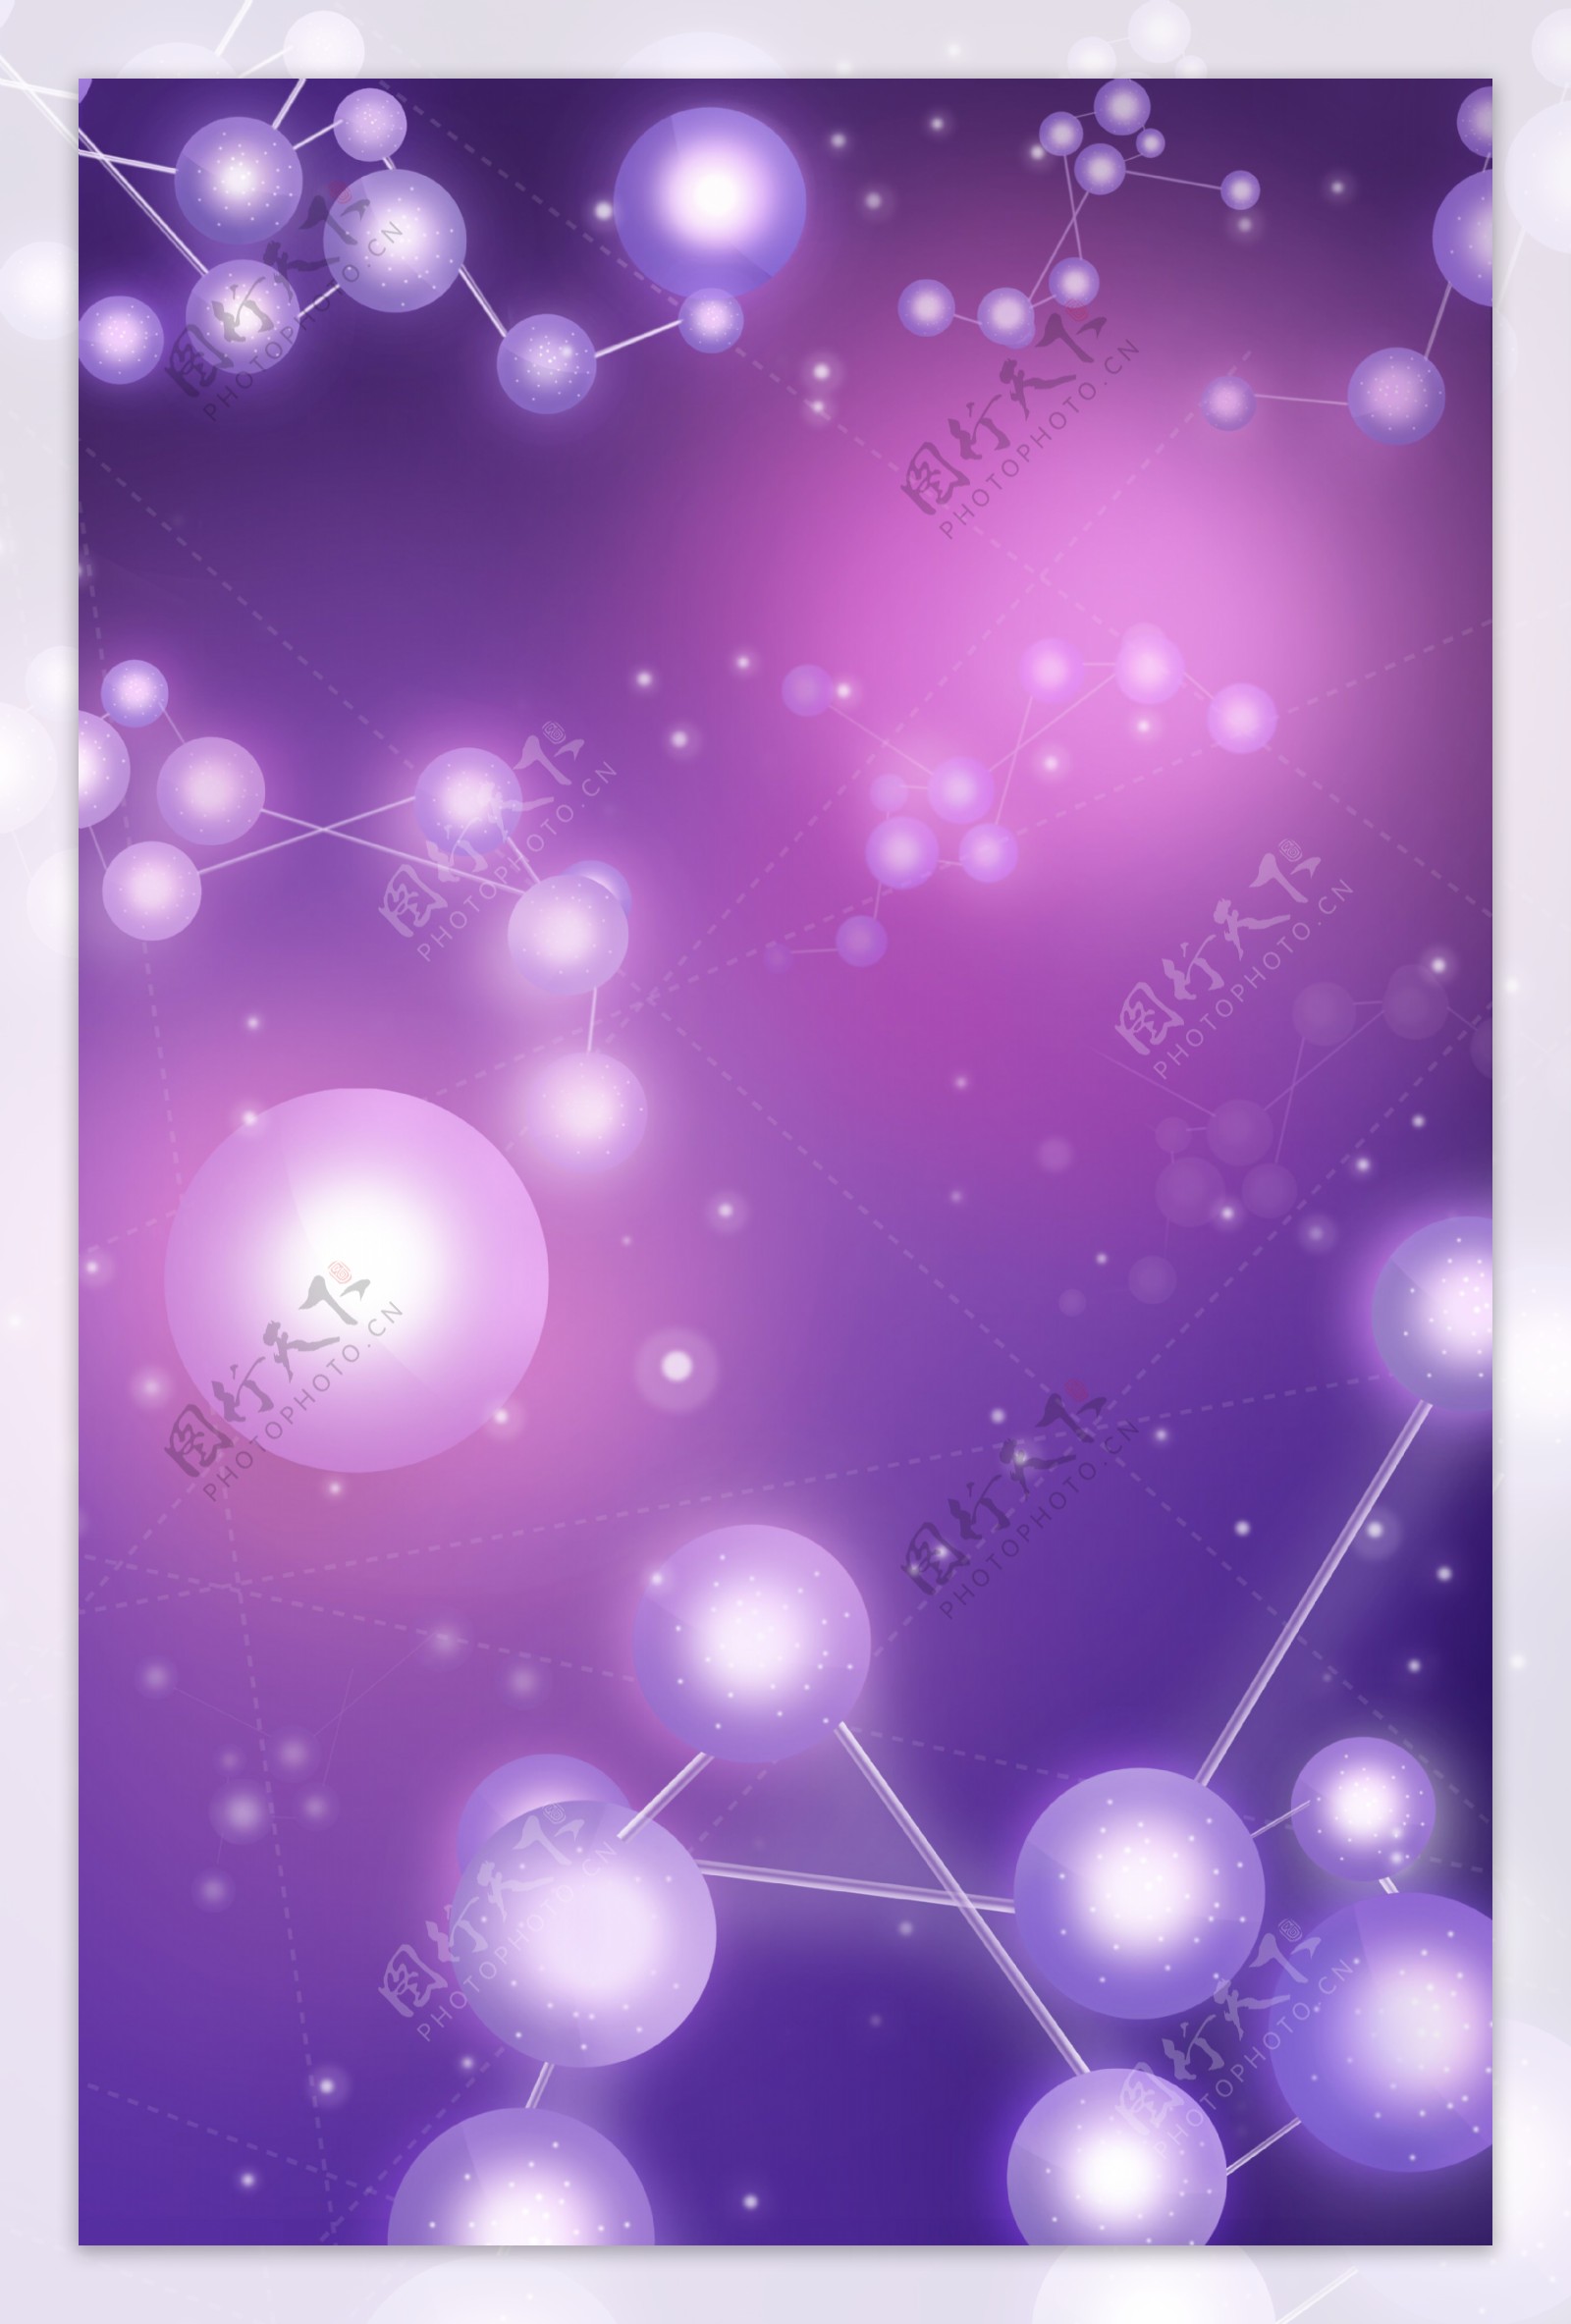 白色珍珠立体链接紫色手机背景